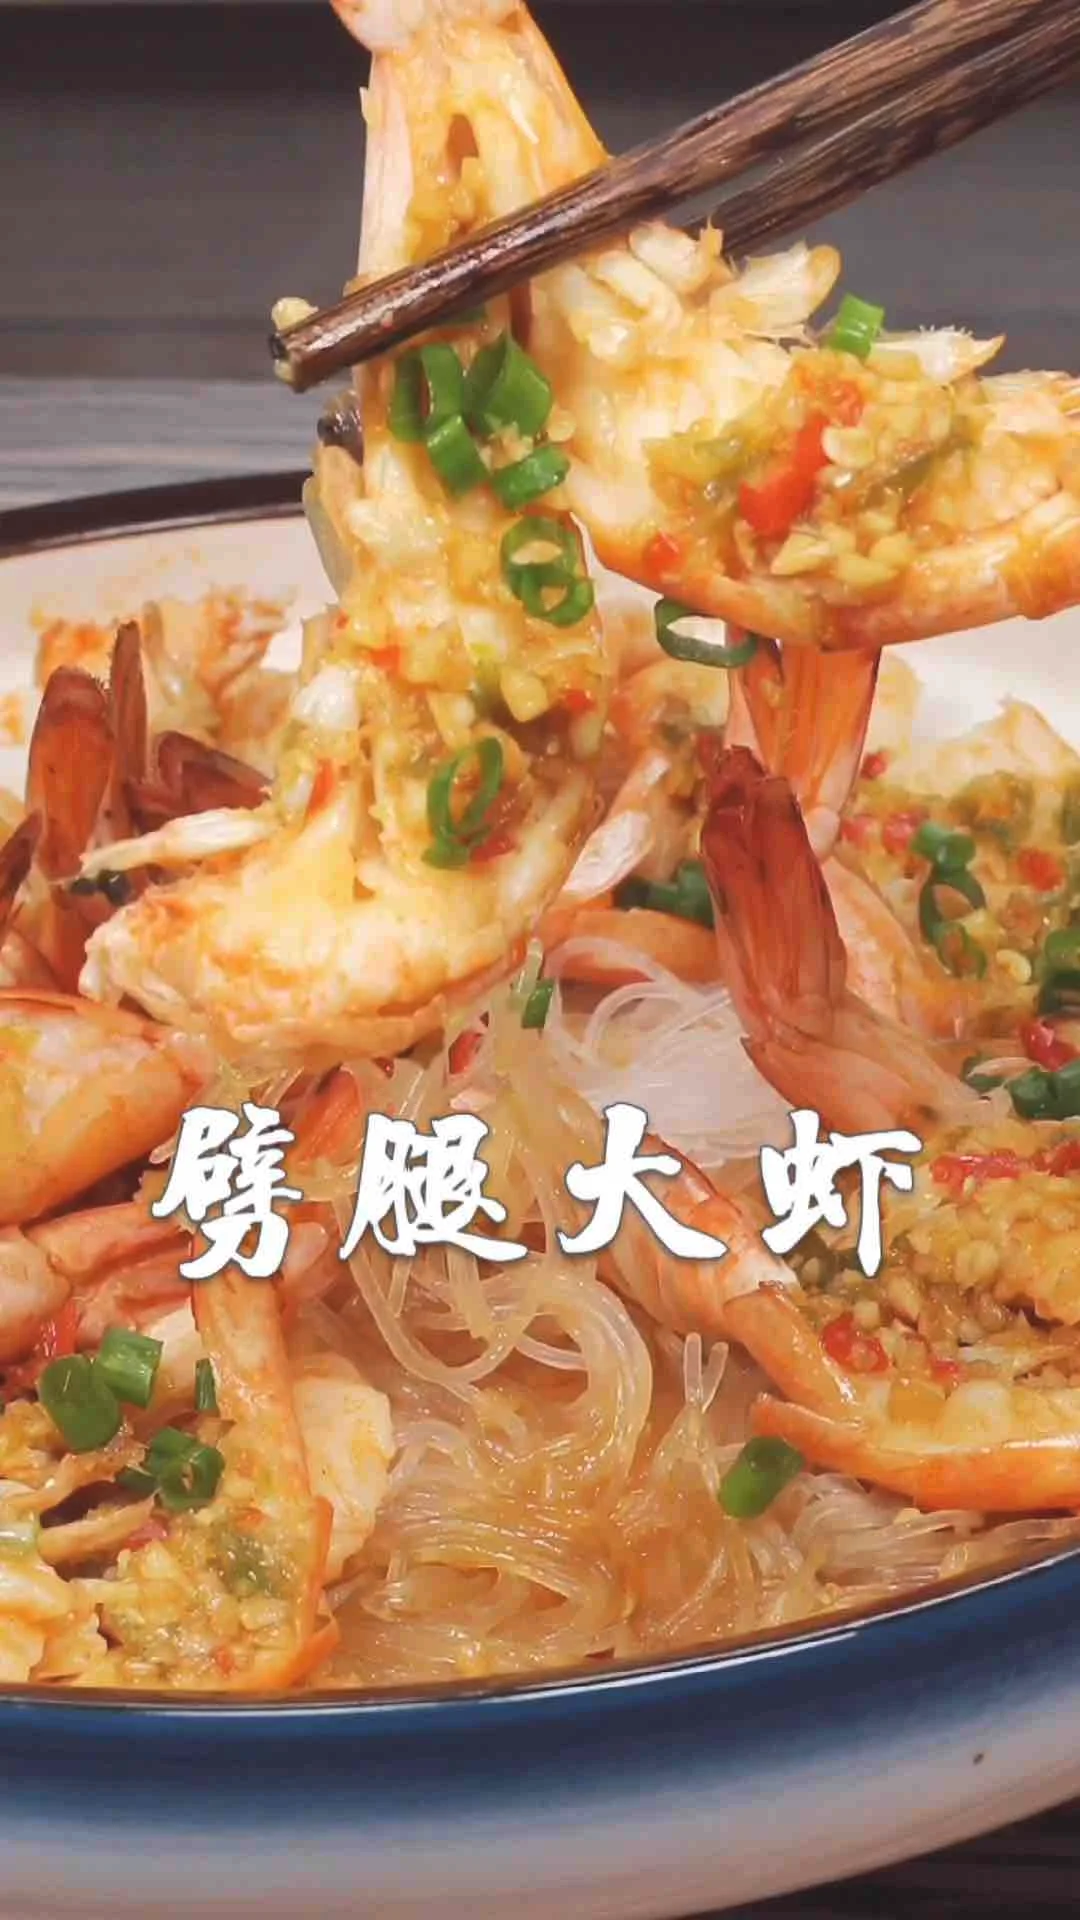 劈腿大虾的做法-咸鲜味蒸菜谱